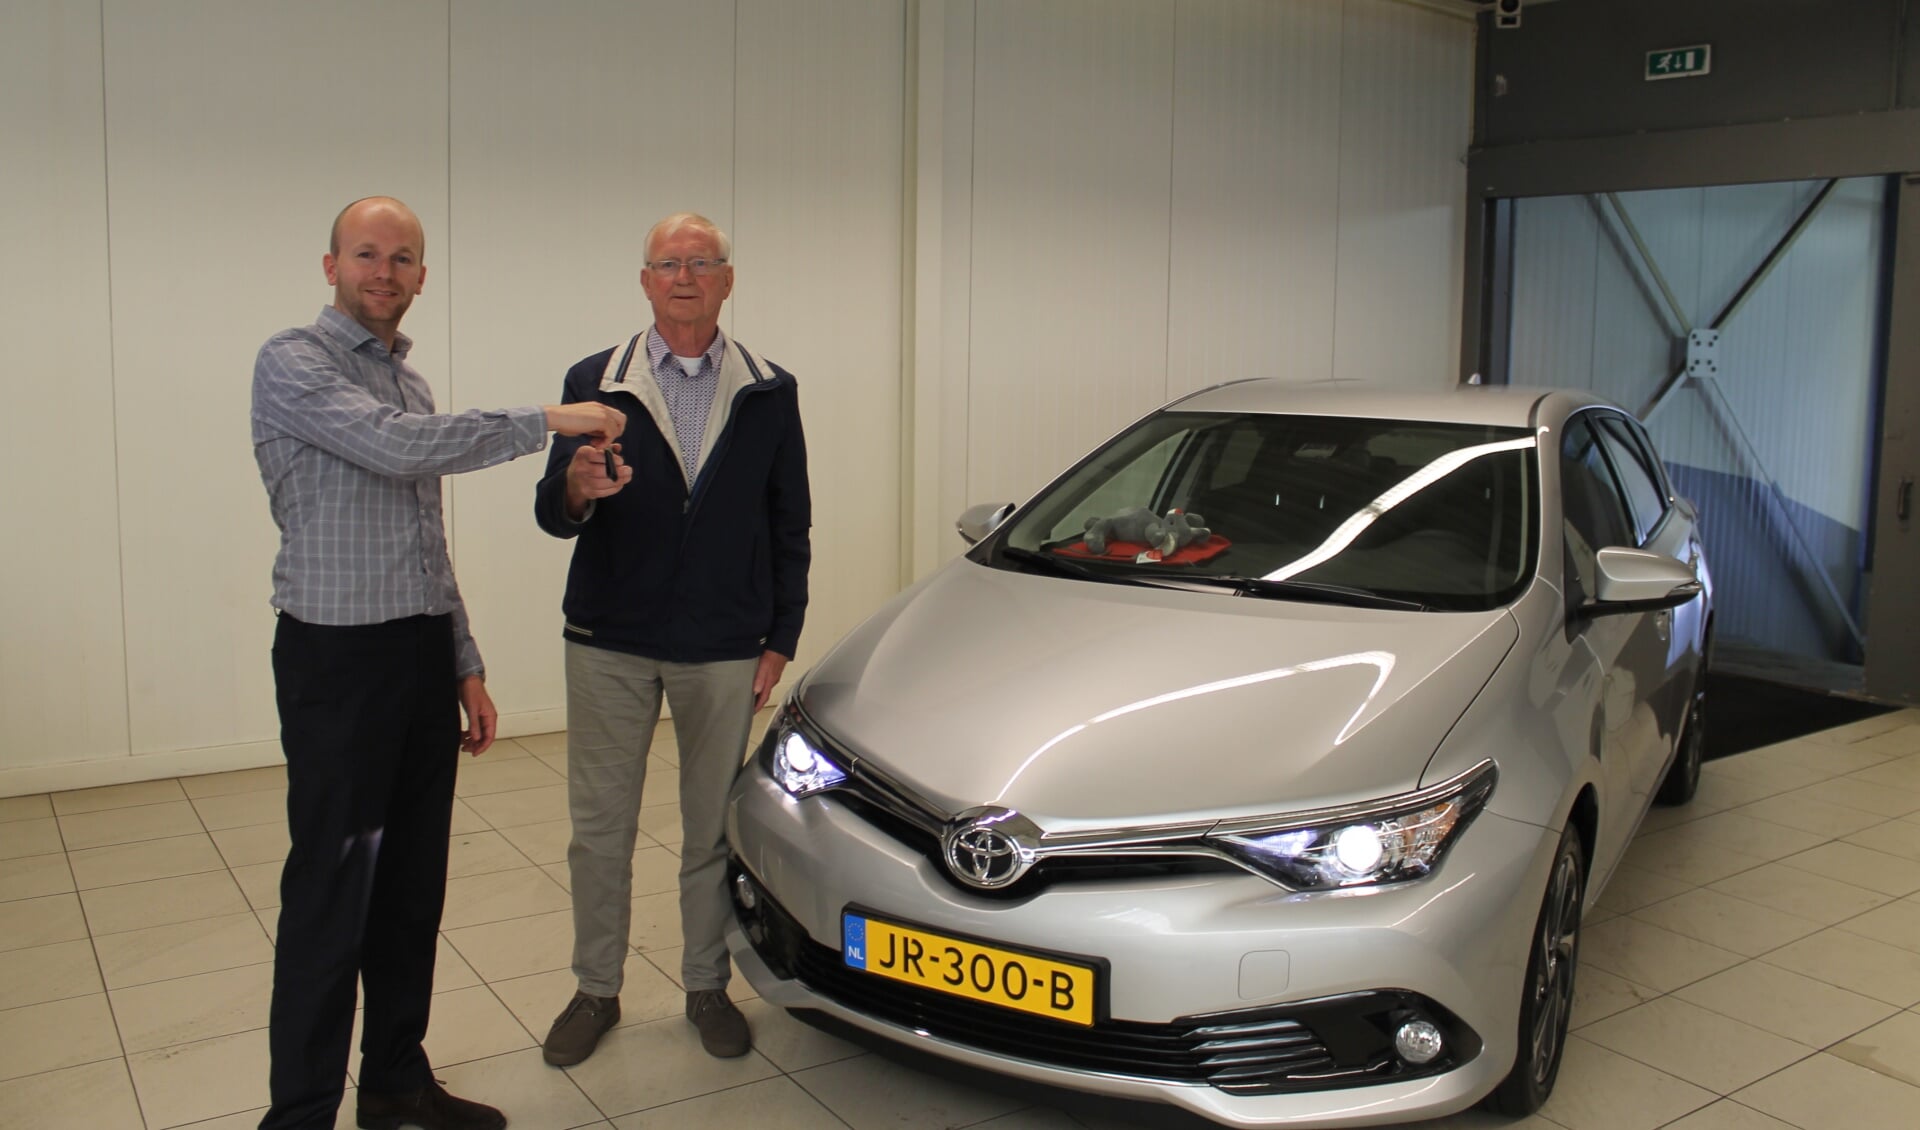 Verkoper Joep Pezie van Toyota DIGO overhandigt de autosleuteltjes aan de heer Wim van der Knaap.